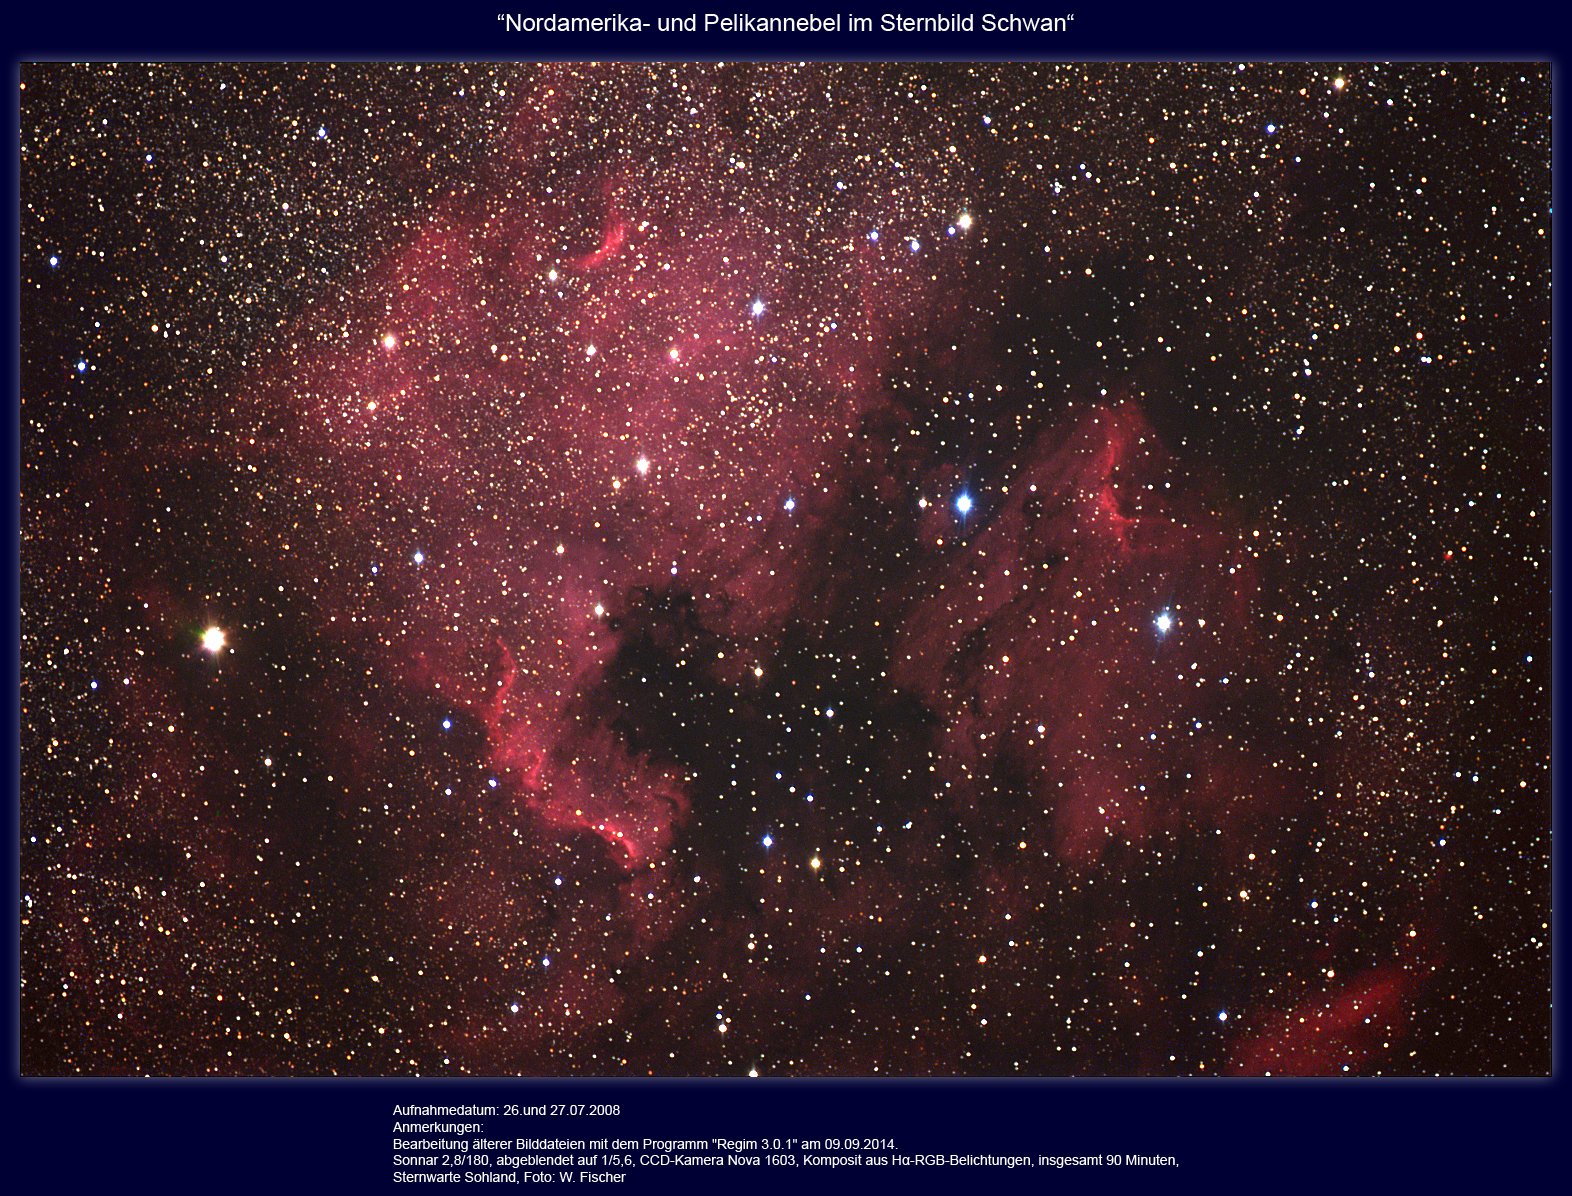 20140909.NGC 7000